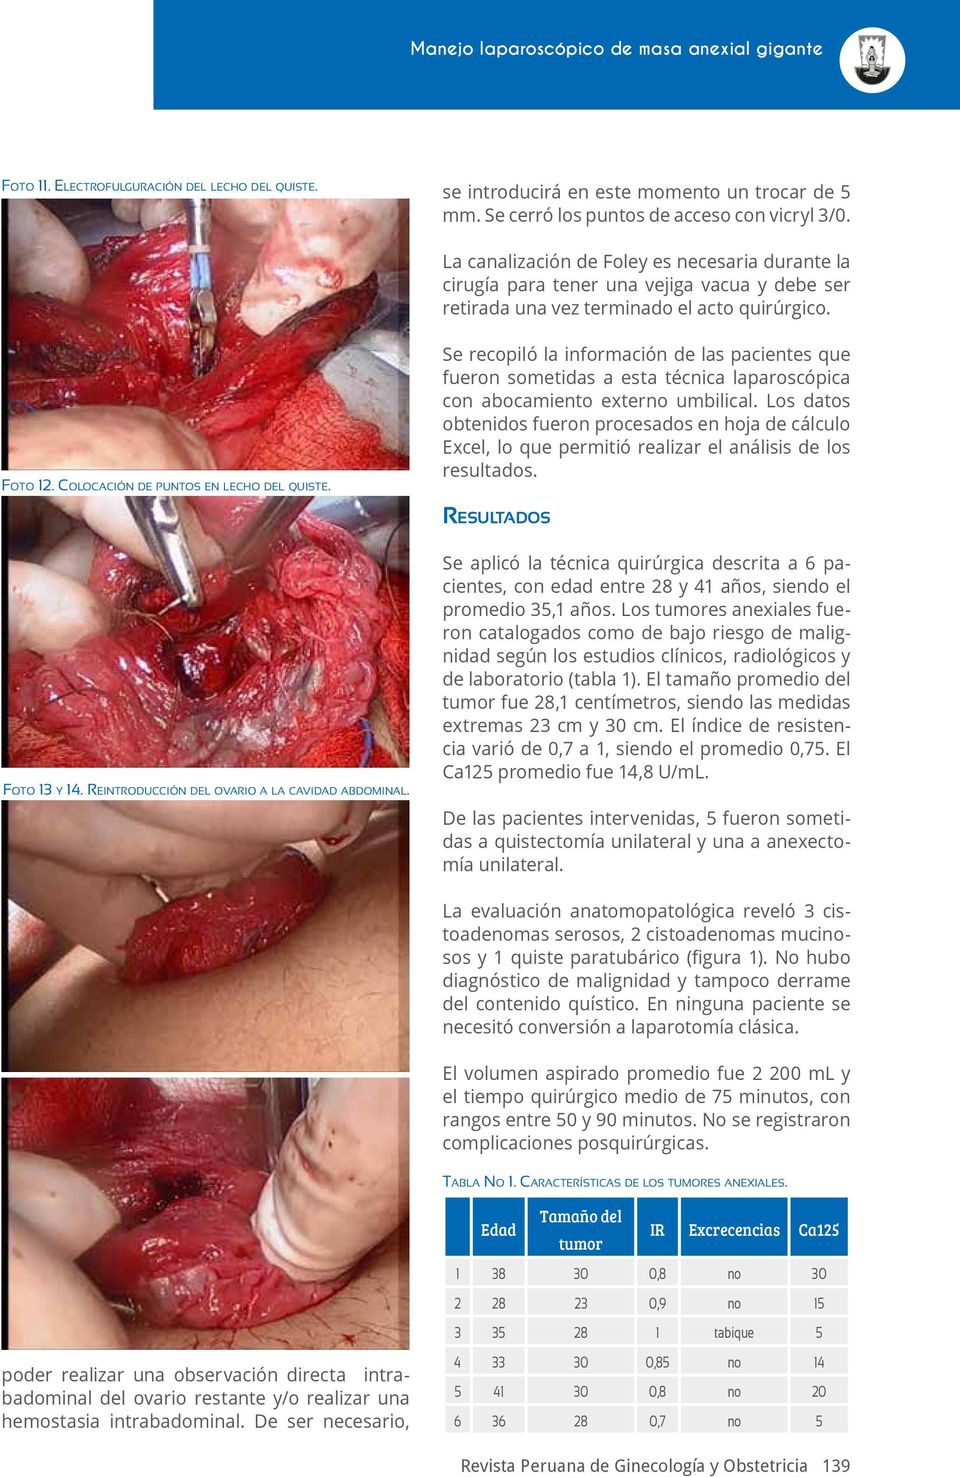 Se recopiló la información de las pacientes que fueron sometidas a esta técnica laparoscópica con abocamiento externo umbilical.